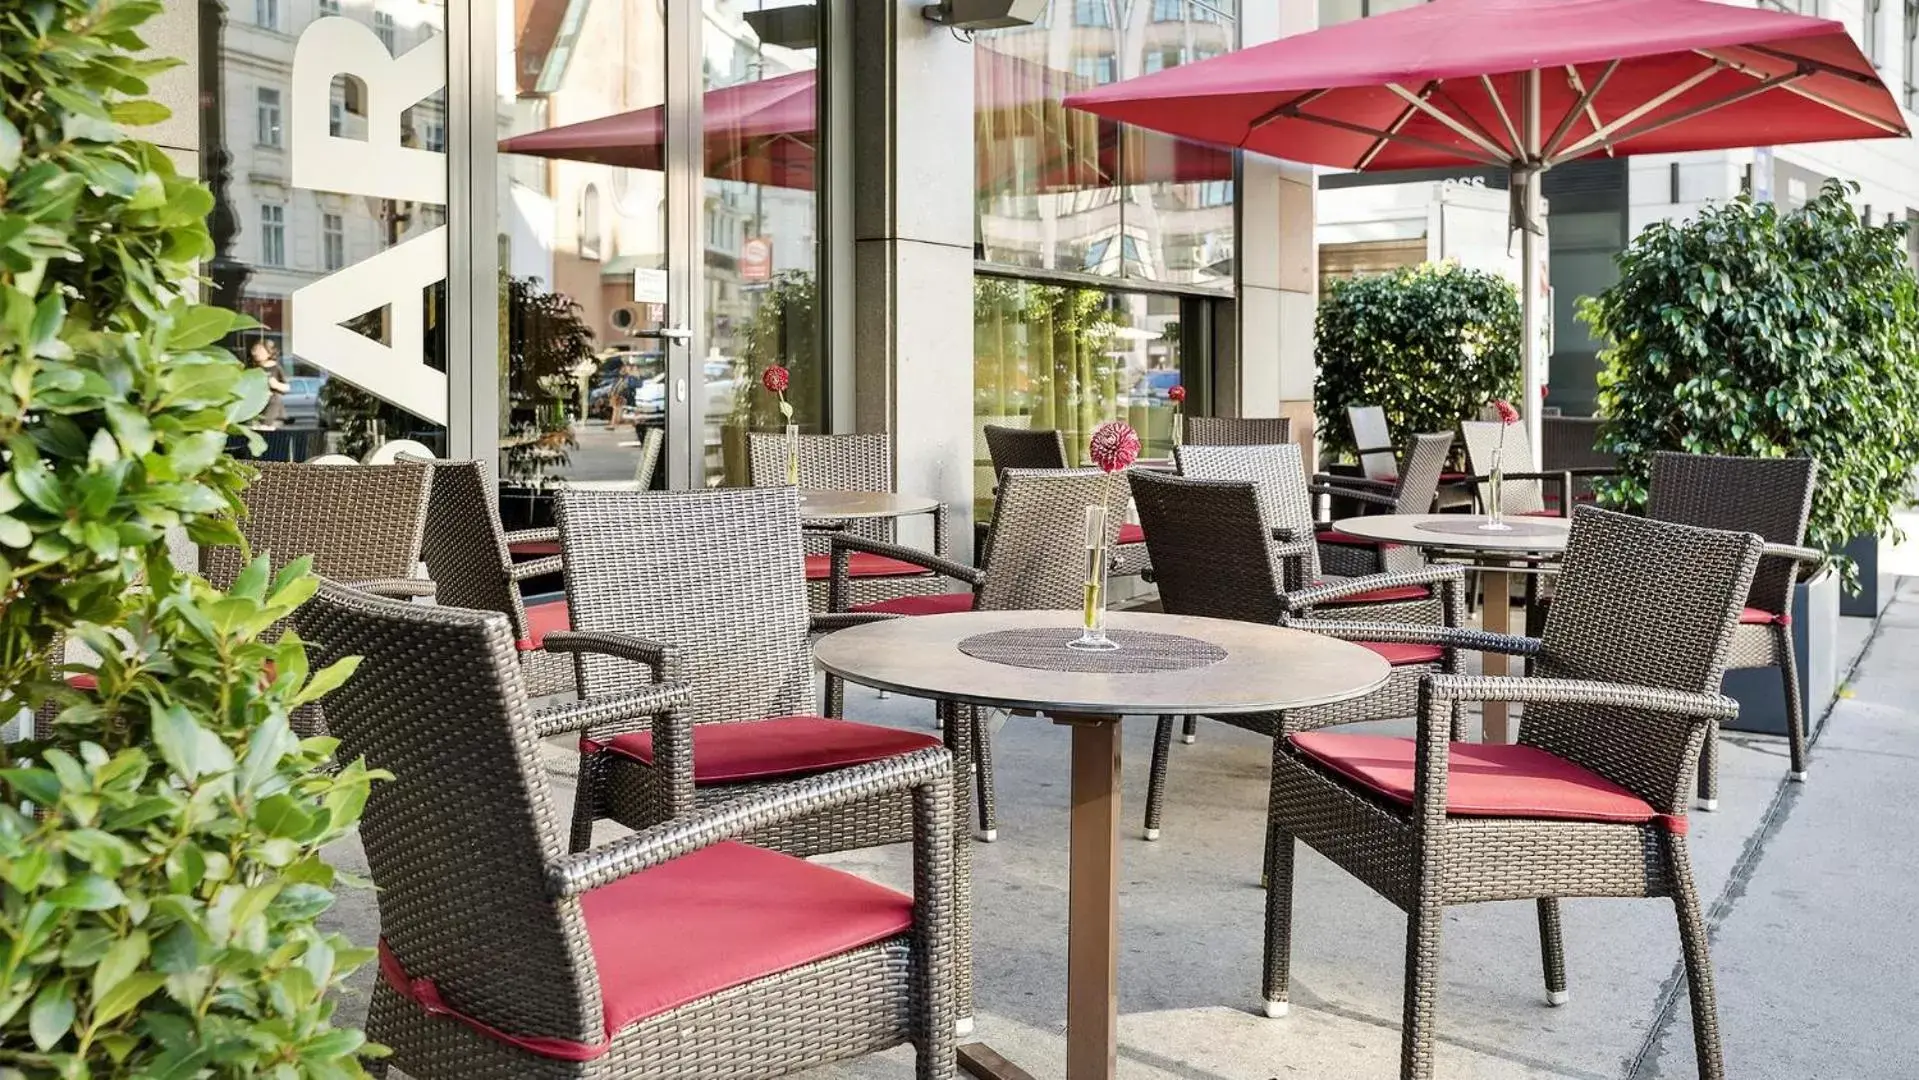 Balcony/Terrace, Lounge/Bar in Austria Trend Hotel Europa Wien